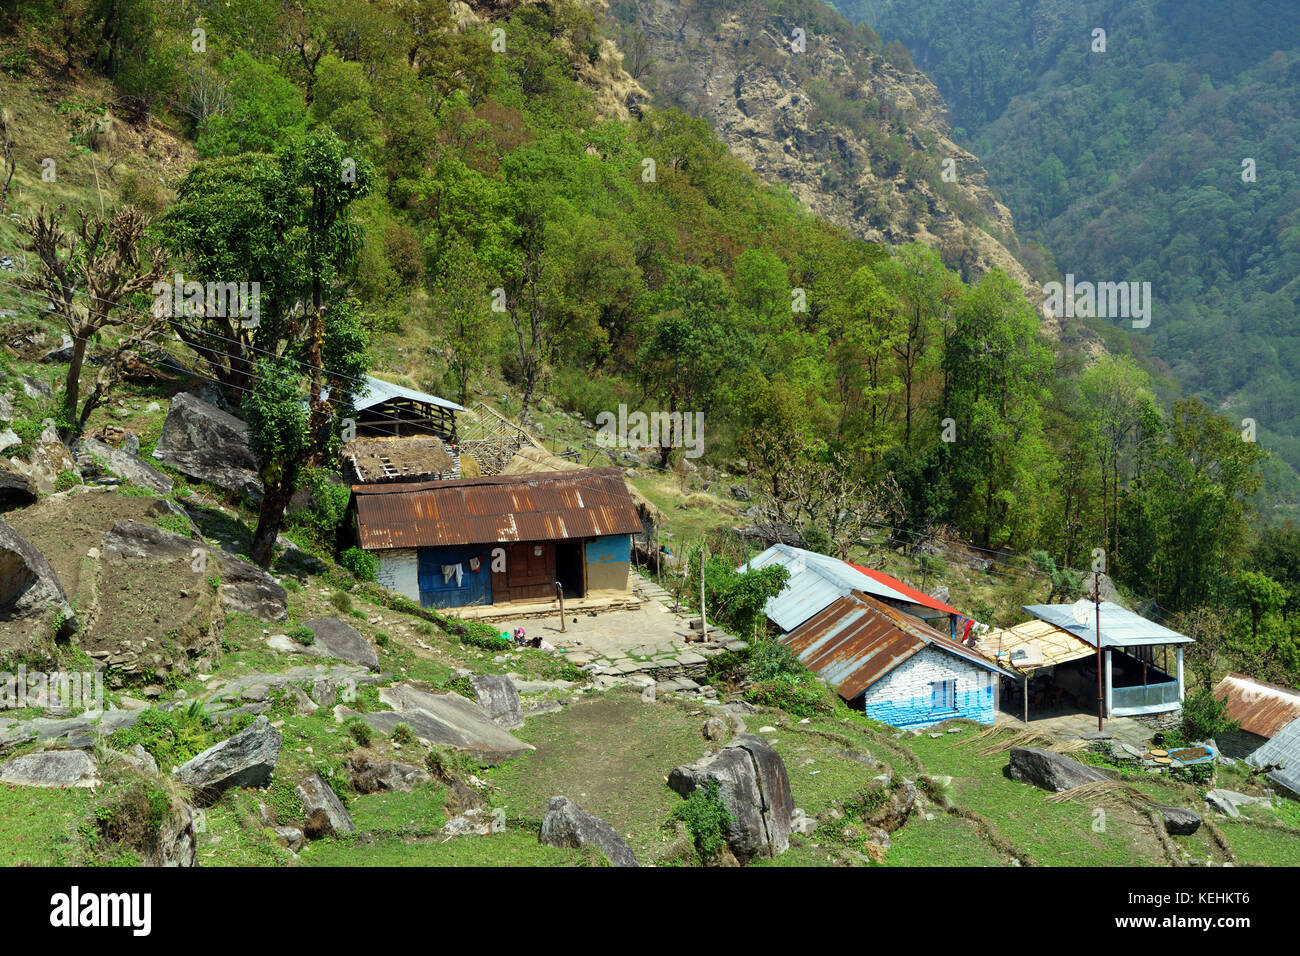 Hanglage Häuser in der Nähe von Ghandruk, Annapurna region, Nepal. Stockfoto